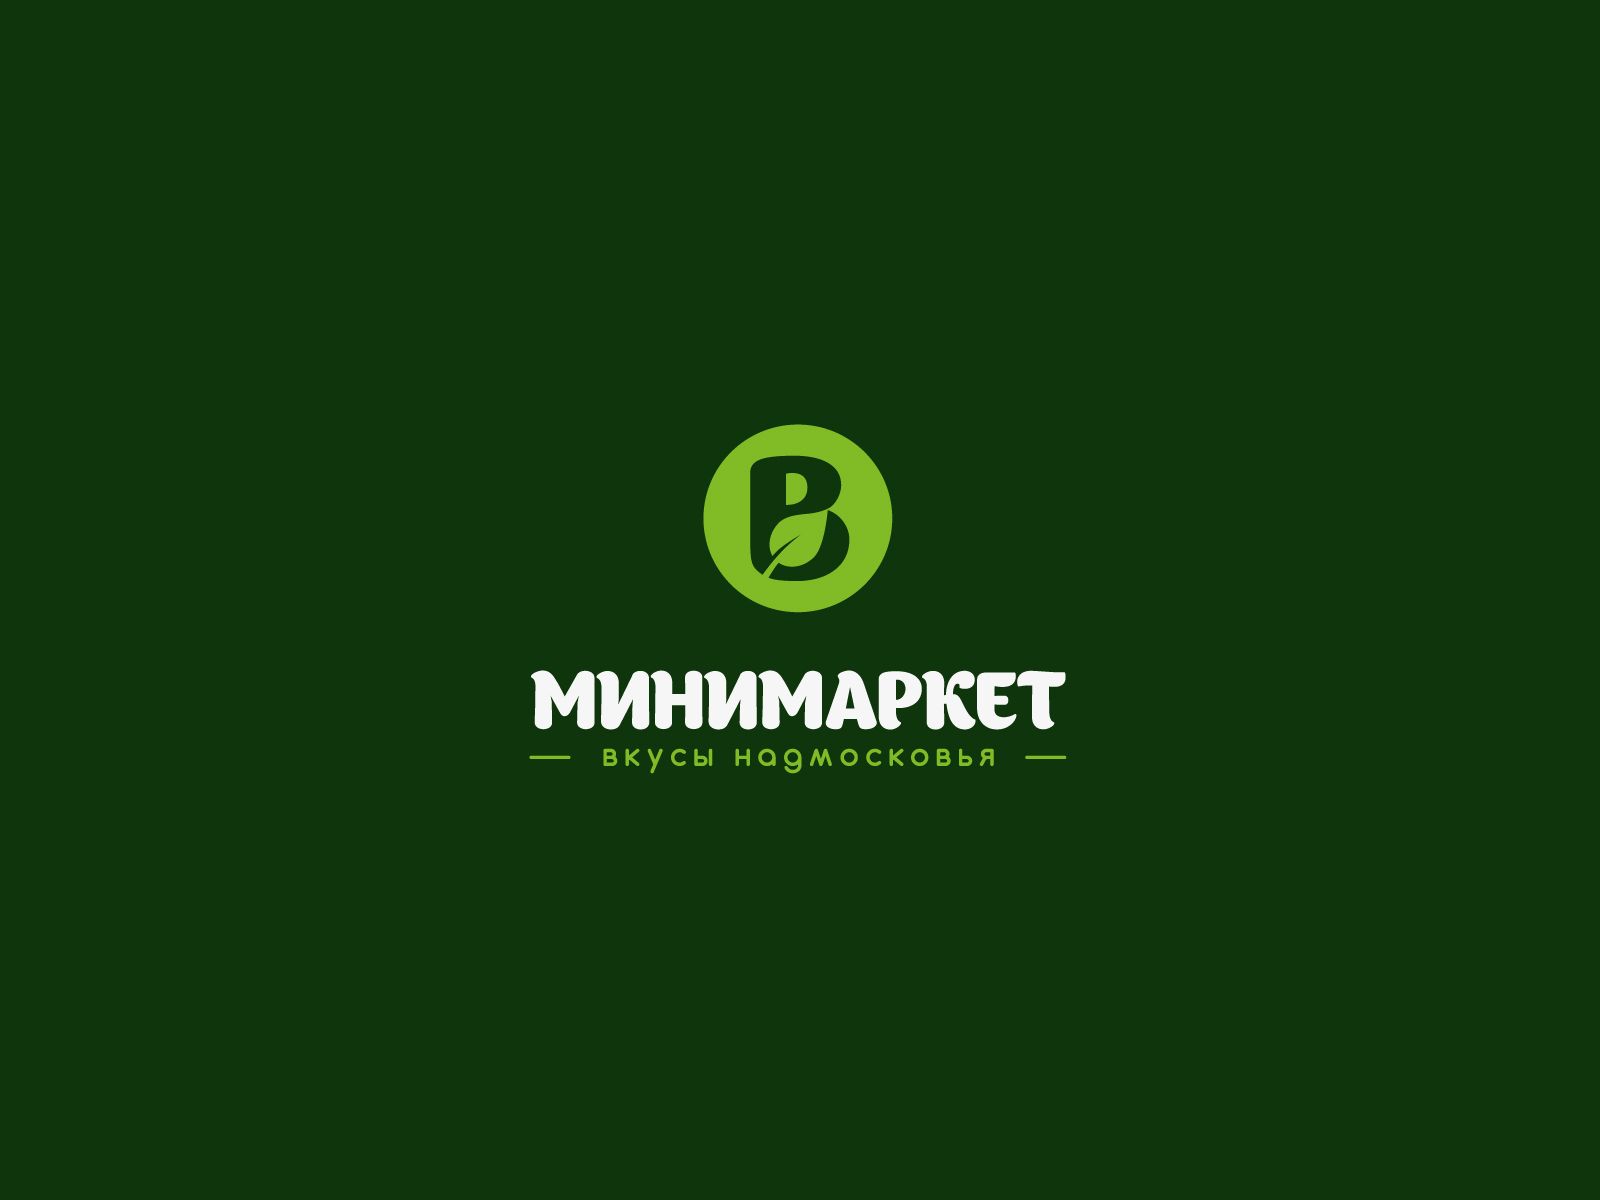 Лого и фирменный стиль для Вкусы Надмосковья - дизайнер U4po4mak